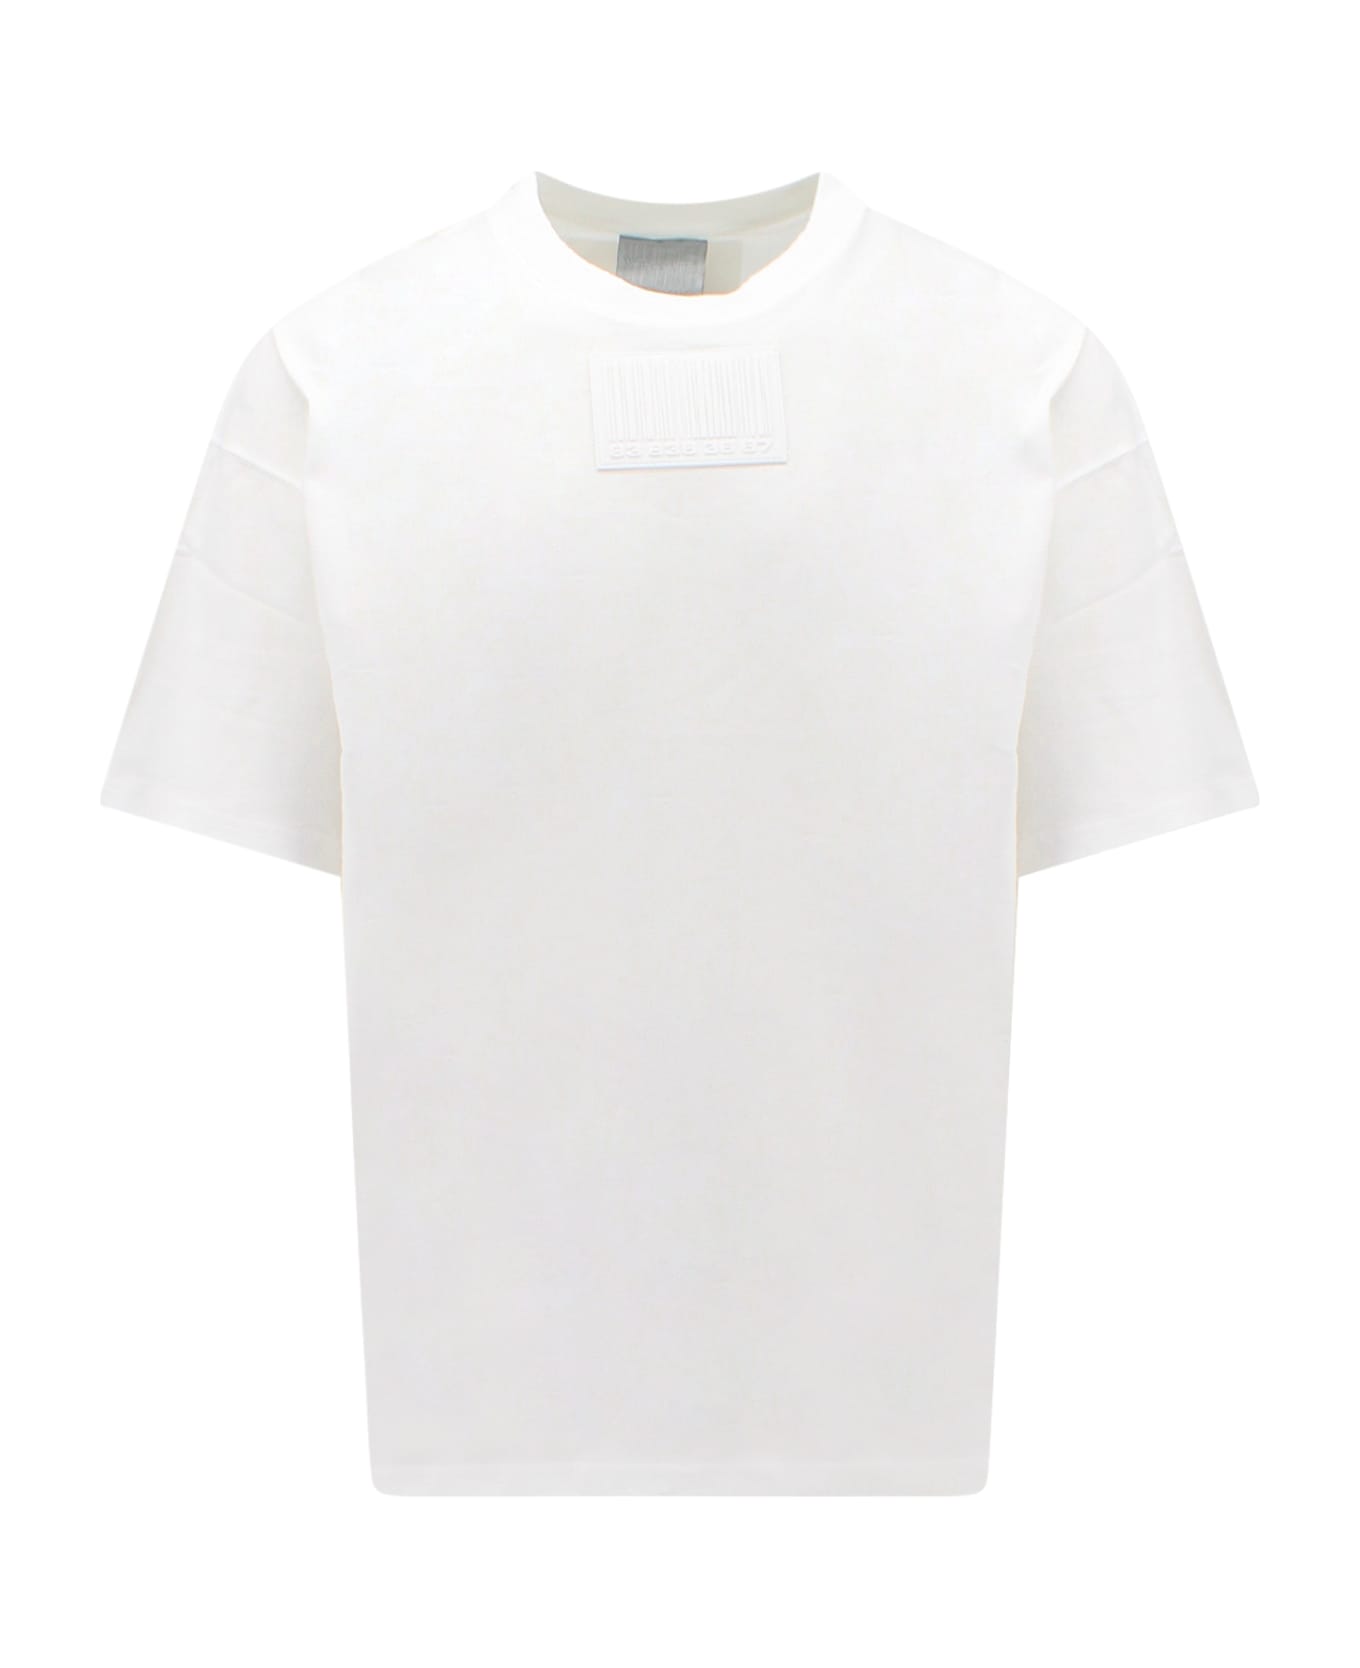 VTMNTS T-shirt - White シャツ